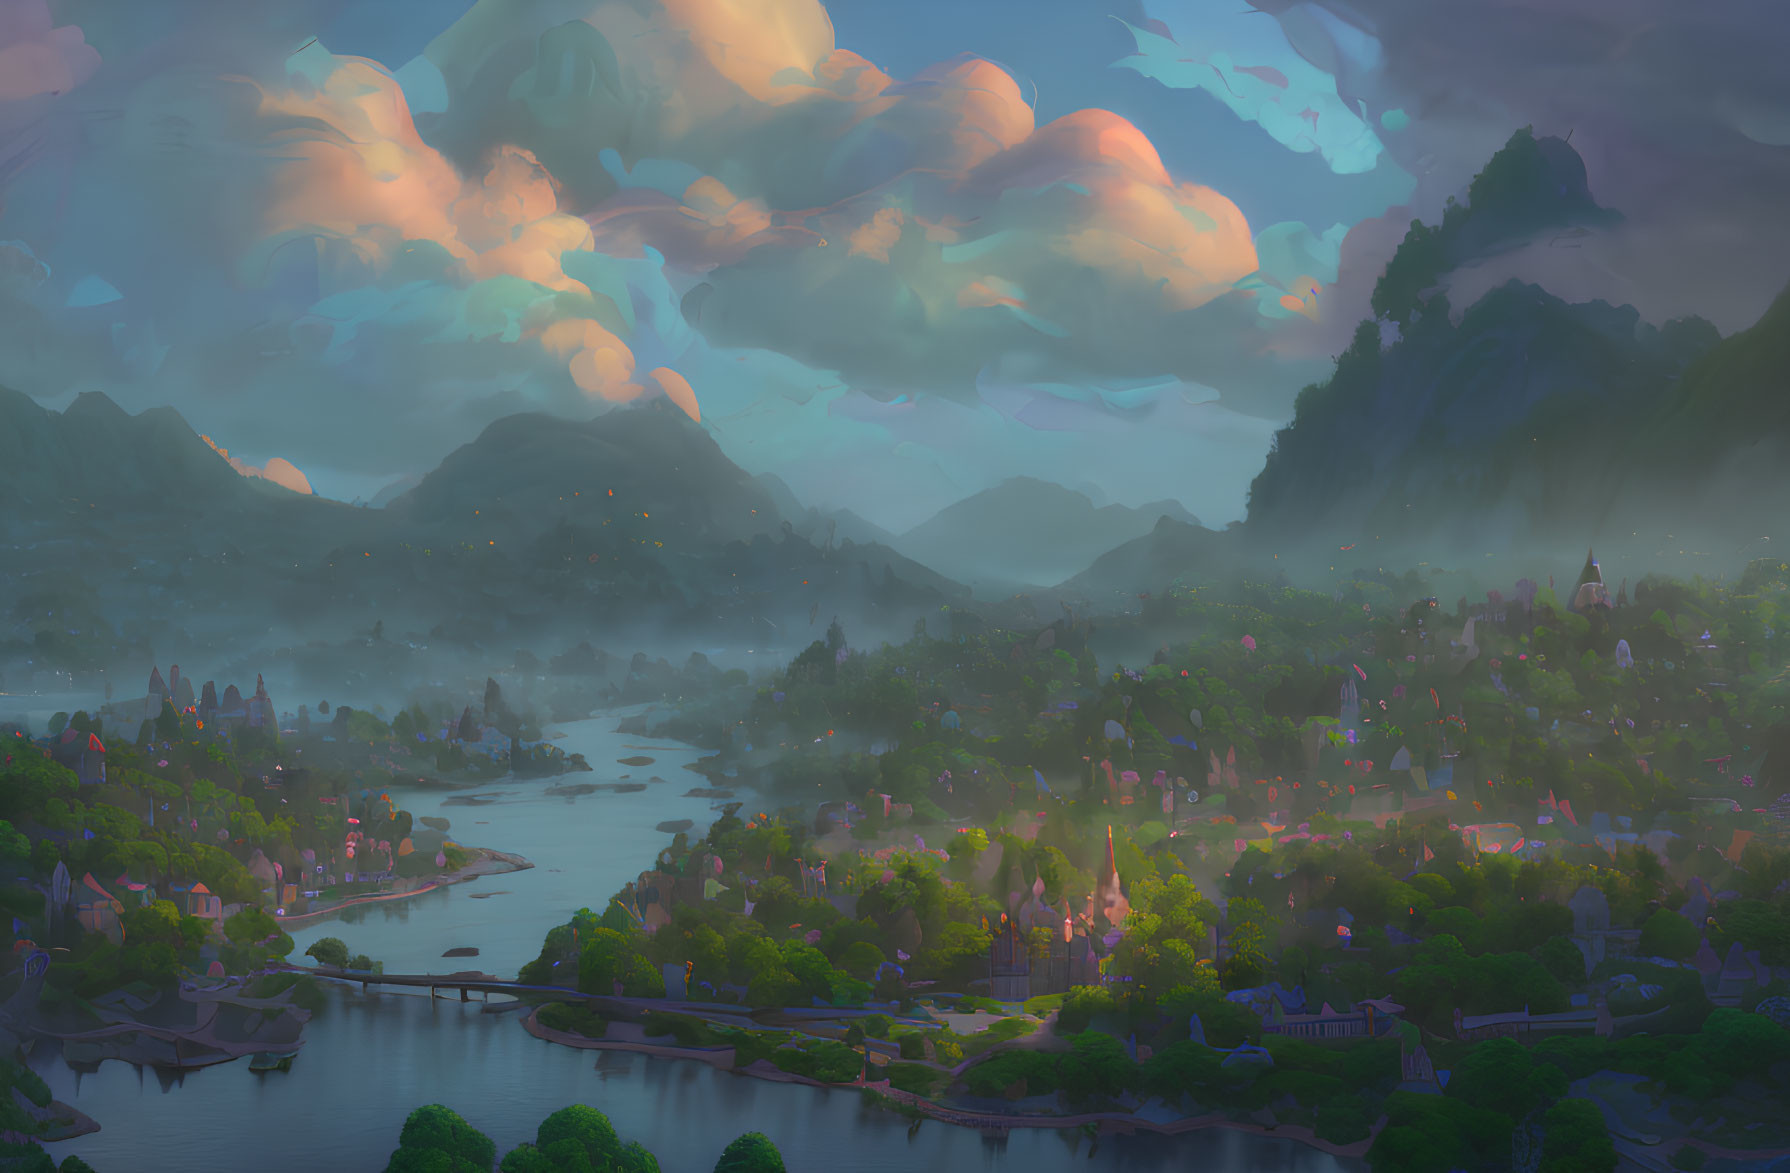 Pastel clouds over river and village in serene fantasy landscape